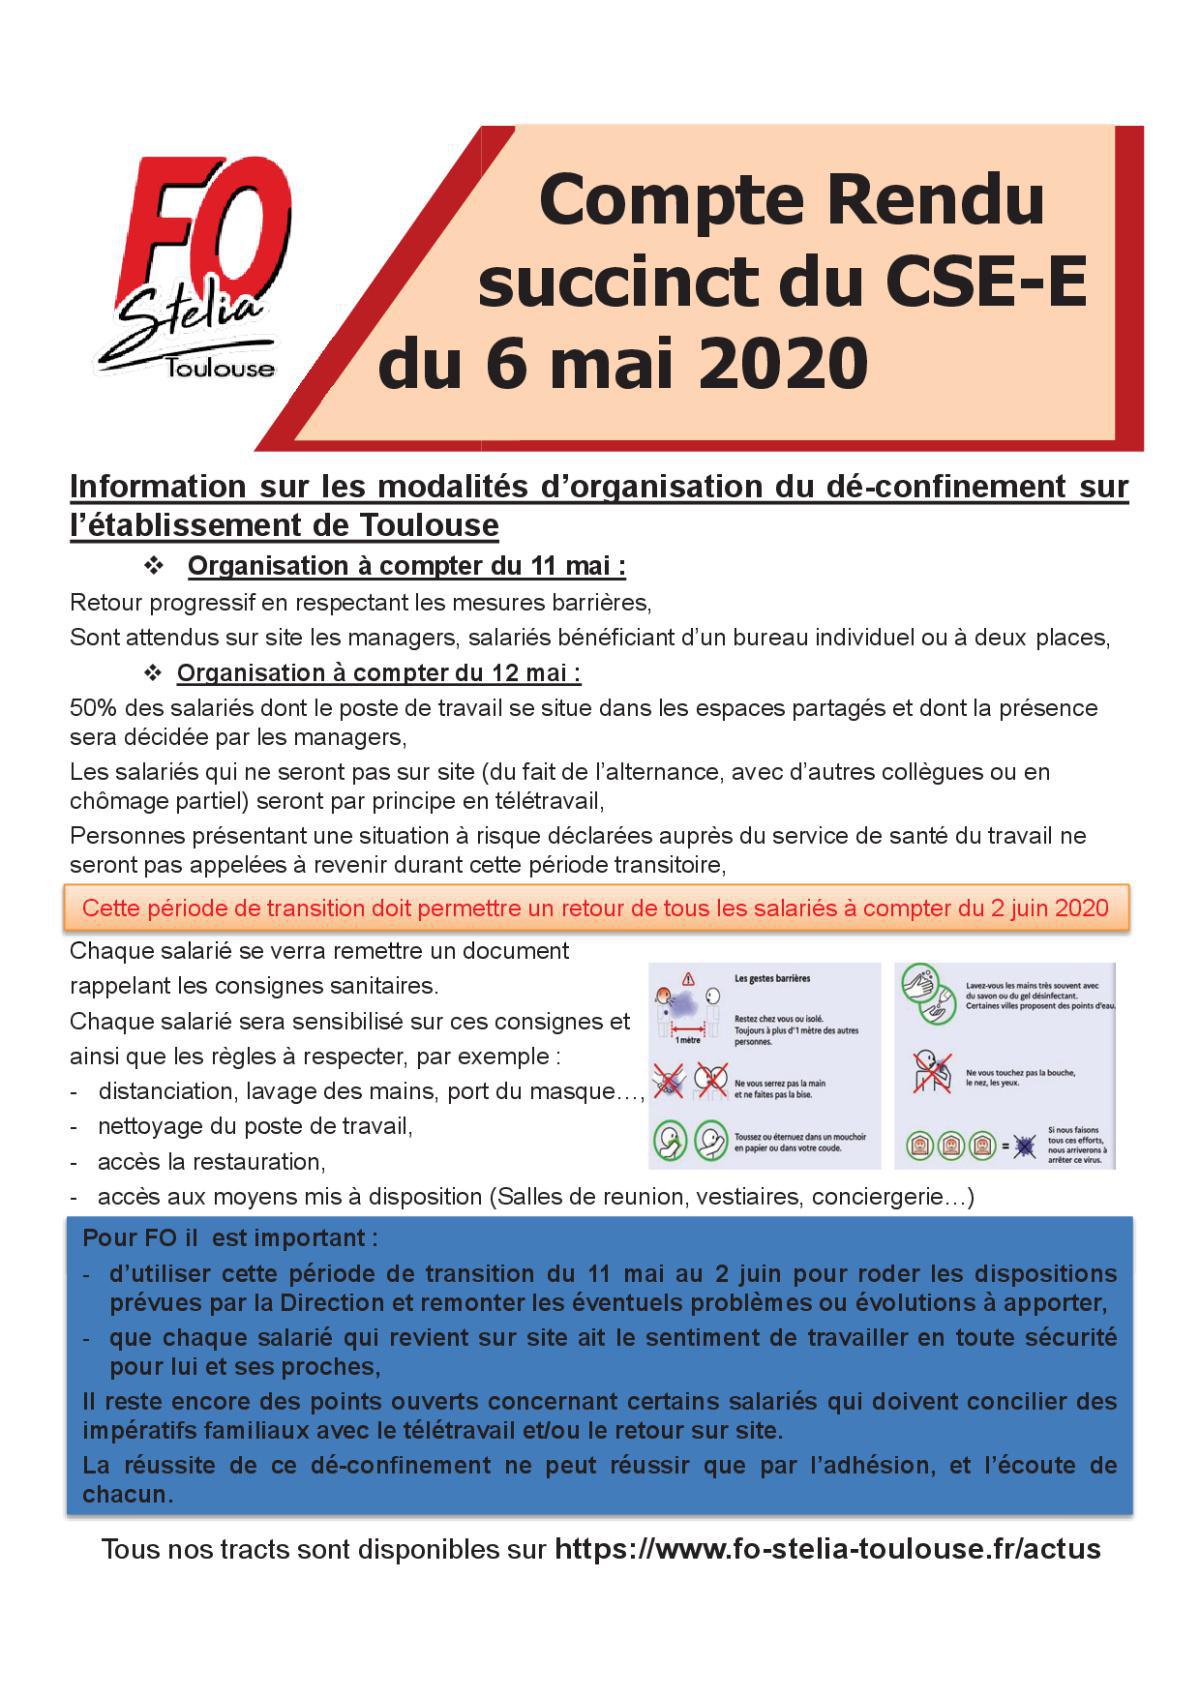 Flash Info : CR succinct du CSE-E du 6 mai 2020